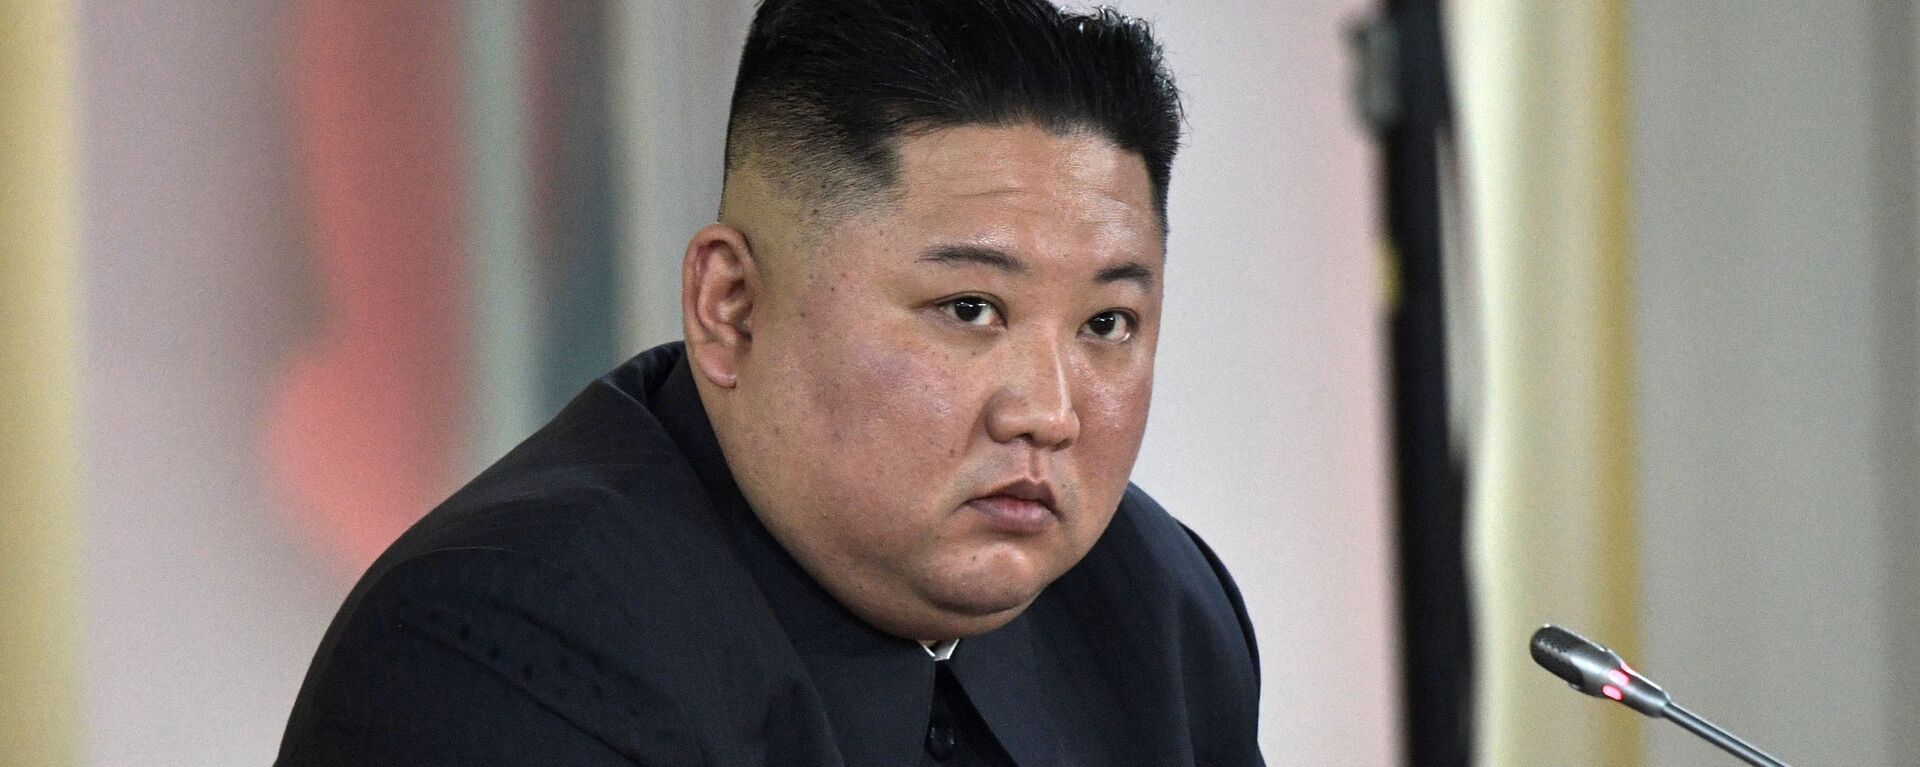 Nhà lãnh đạo Triều Tiên Kim Jong-un. - Sputnik Việt Nam, 1920, 11.06.2021